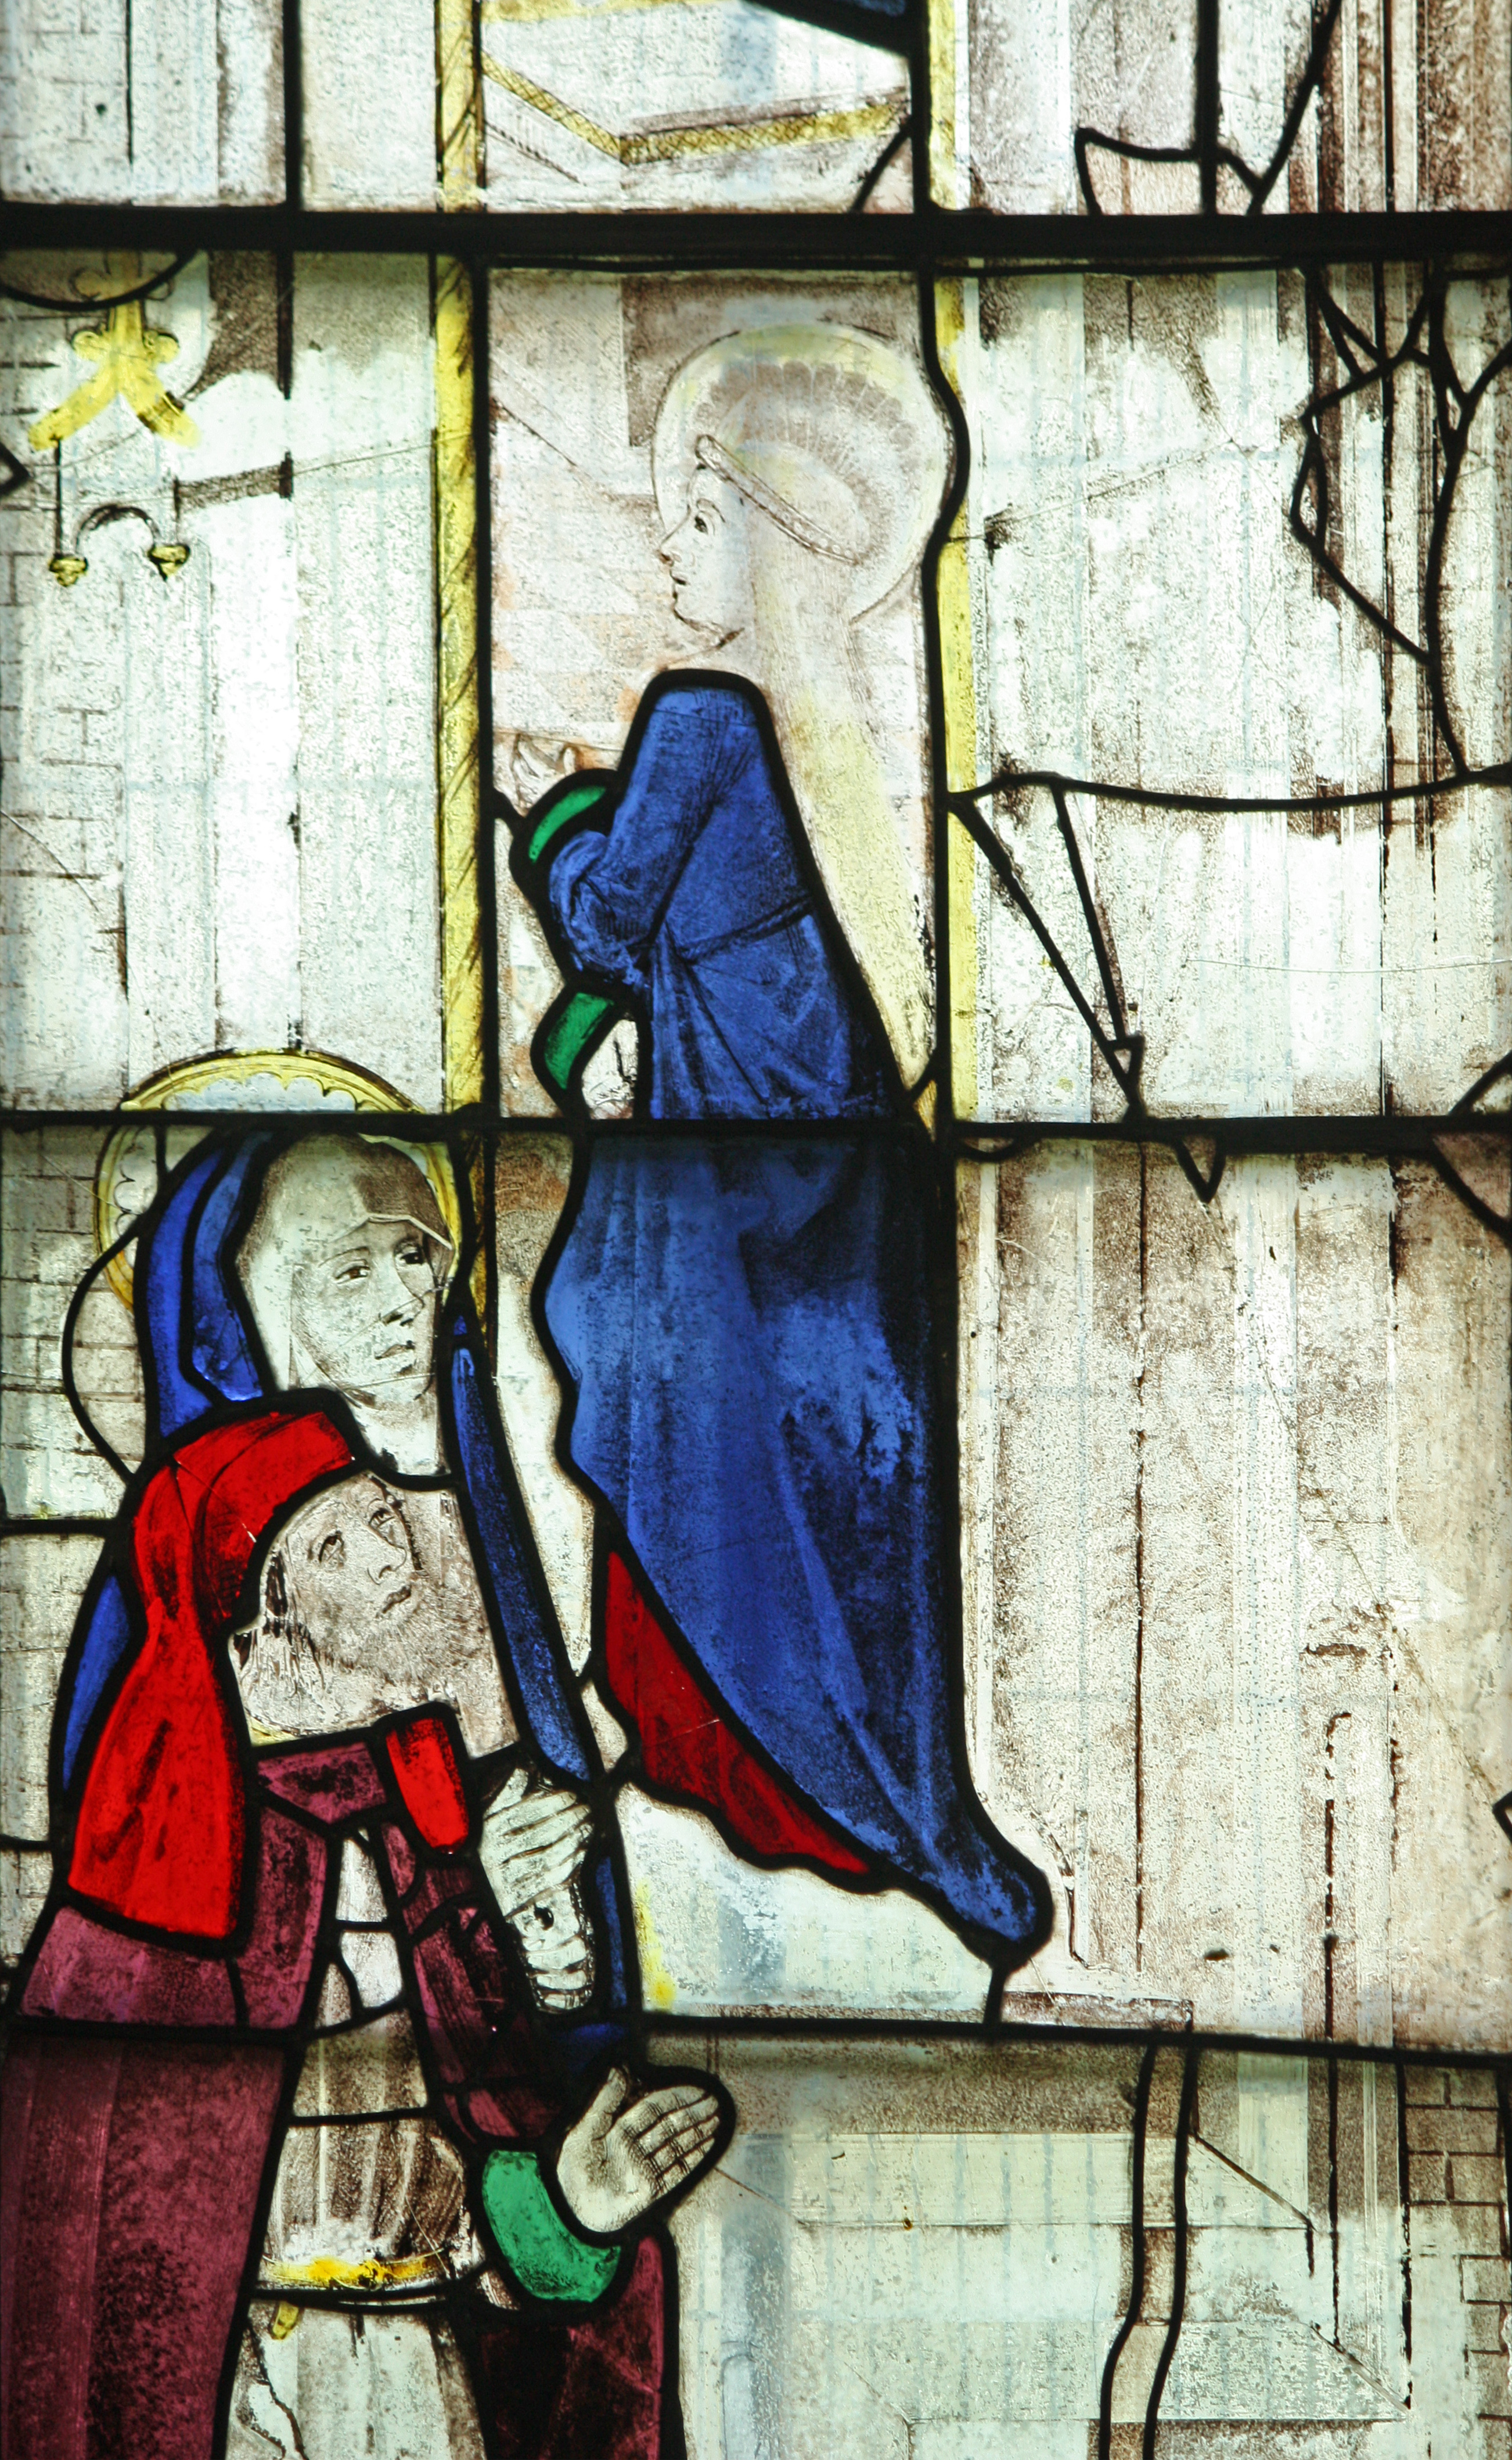 La Vierge Marie entrant dans le Temple – Vitrail médiéval, église paroissiale de Fairford, Angleterre.